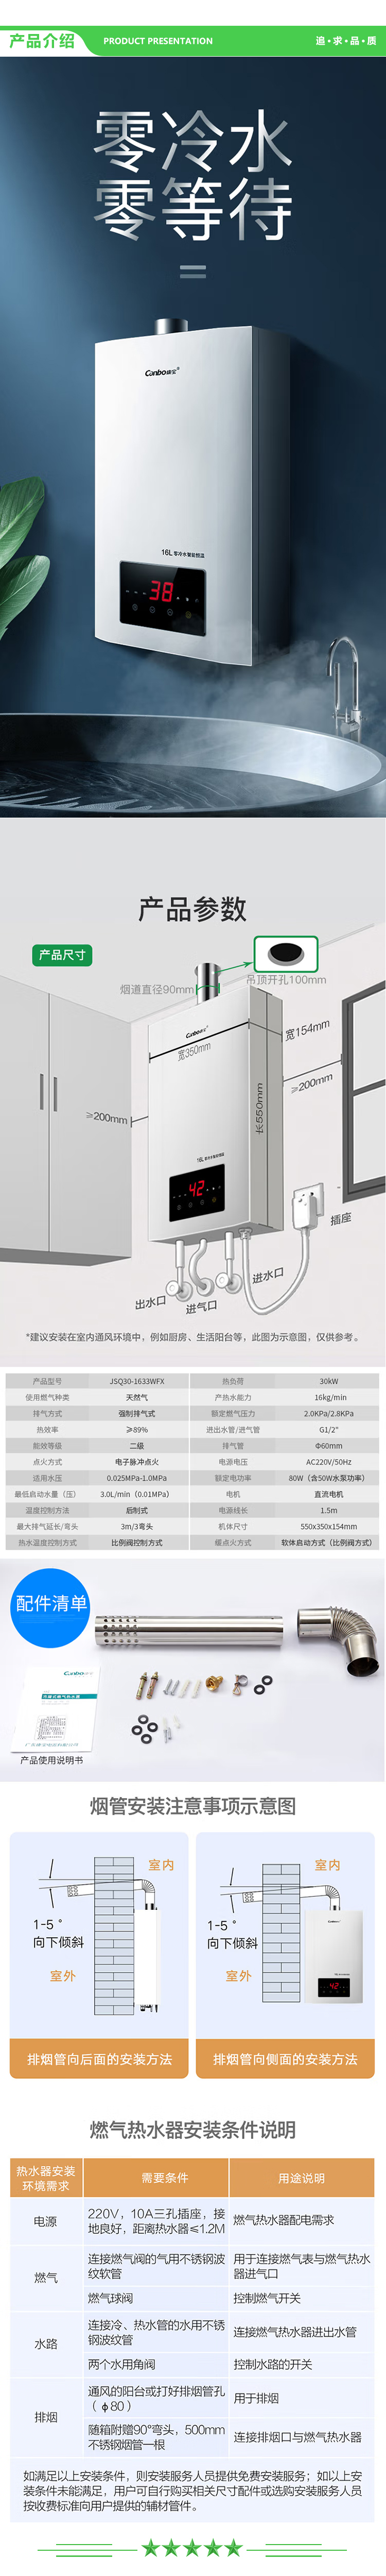 康宝 Canbo JSQ30-1633WFX 12T 16升燃气热水器 零冷水 精控智能恒温 低水压启动运行 天然气 .jpg